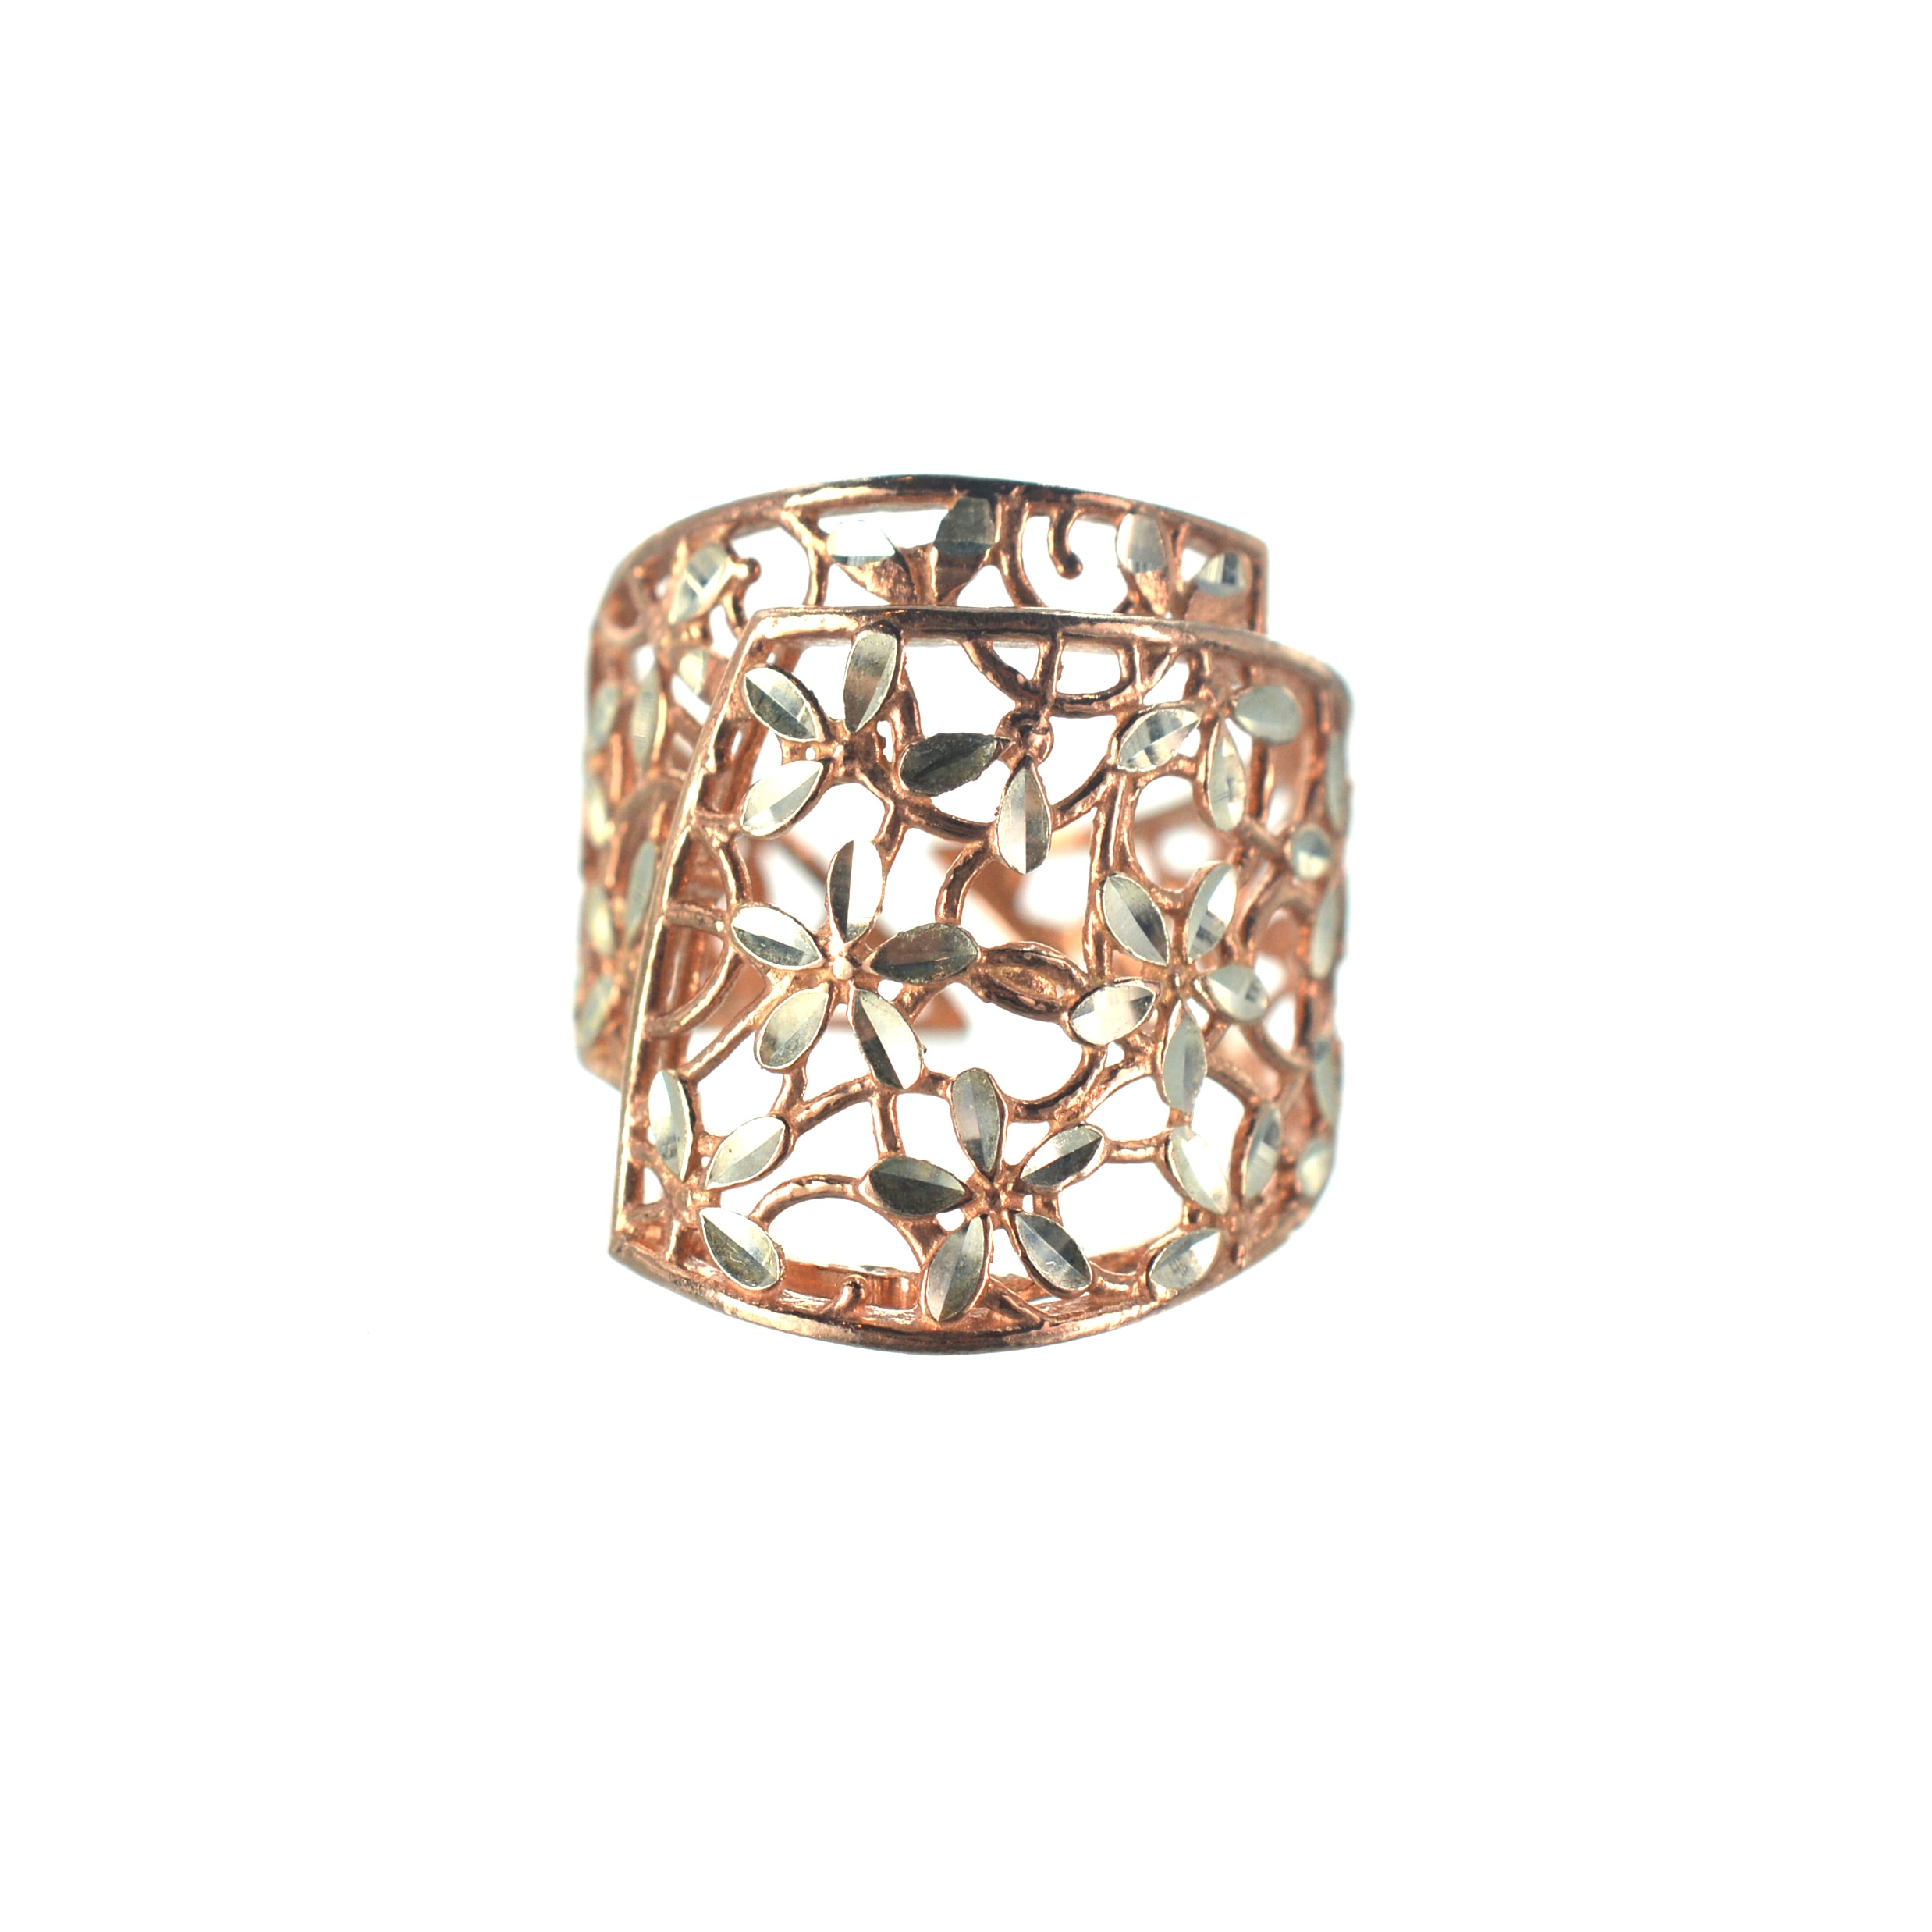 Ασημένιο 925 ροζ χρυσό δαχτυλίδι με ασημένια λουλούδια